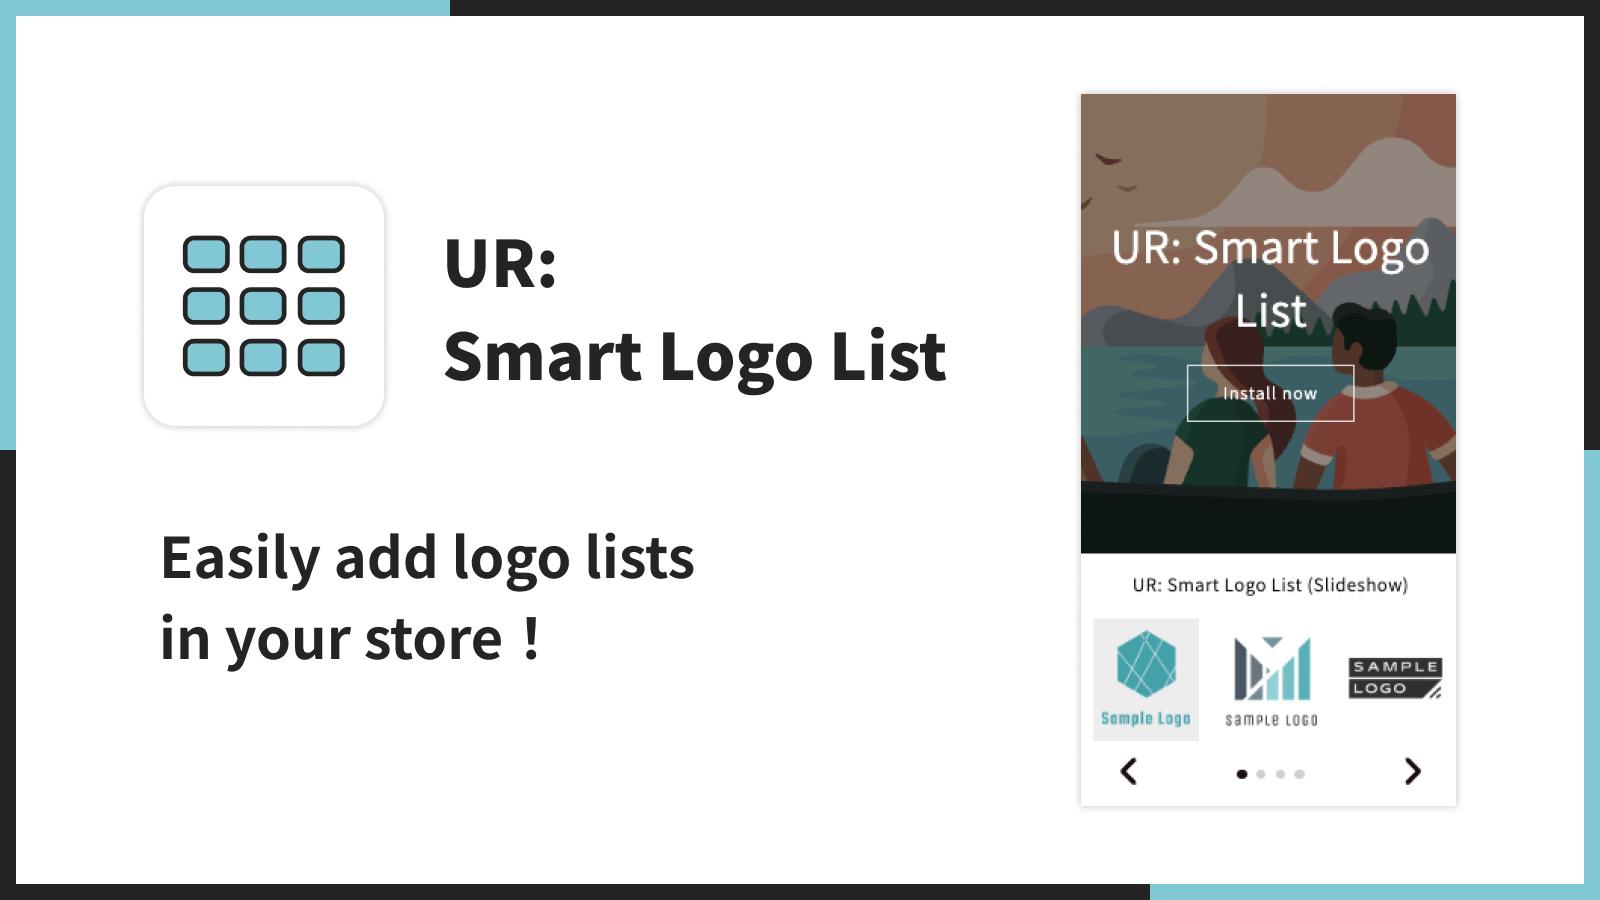 UR: Smart Logo List | Tilføj nemt logo lister i din butik！